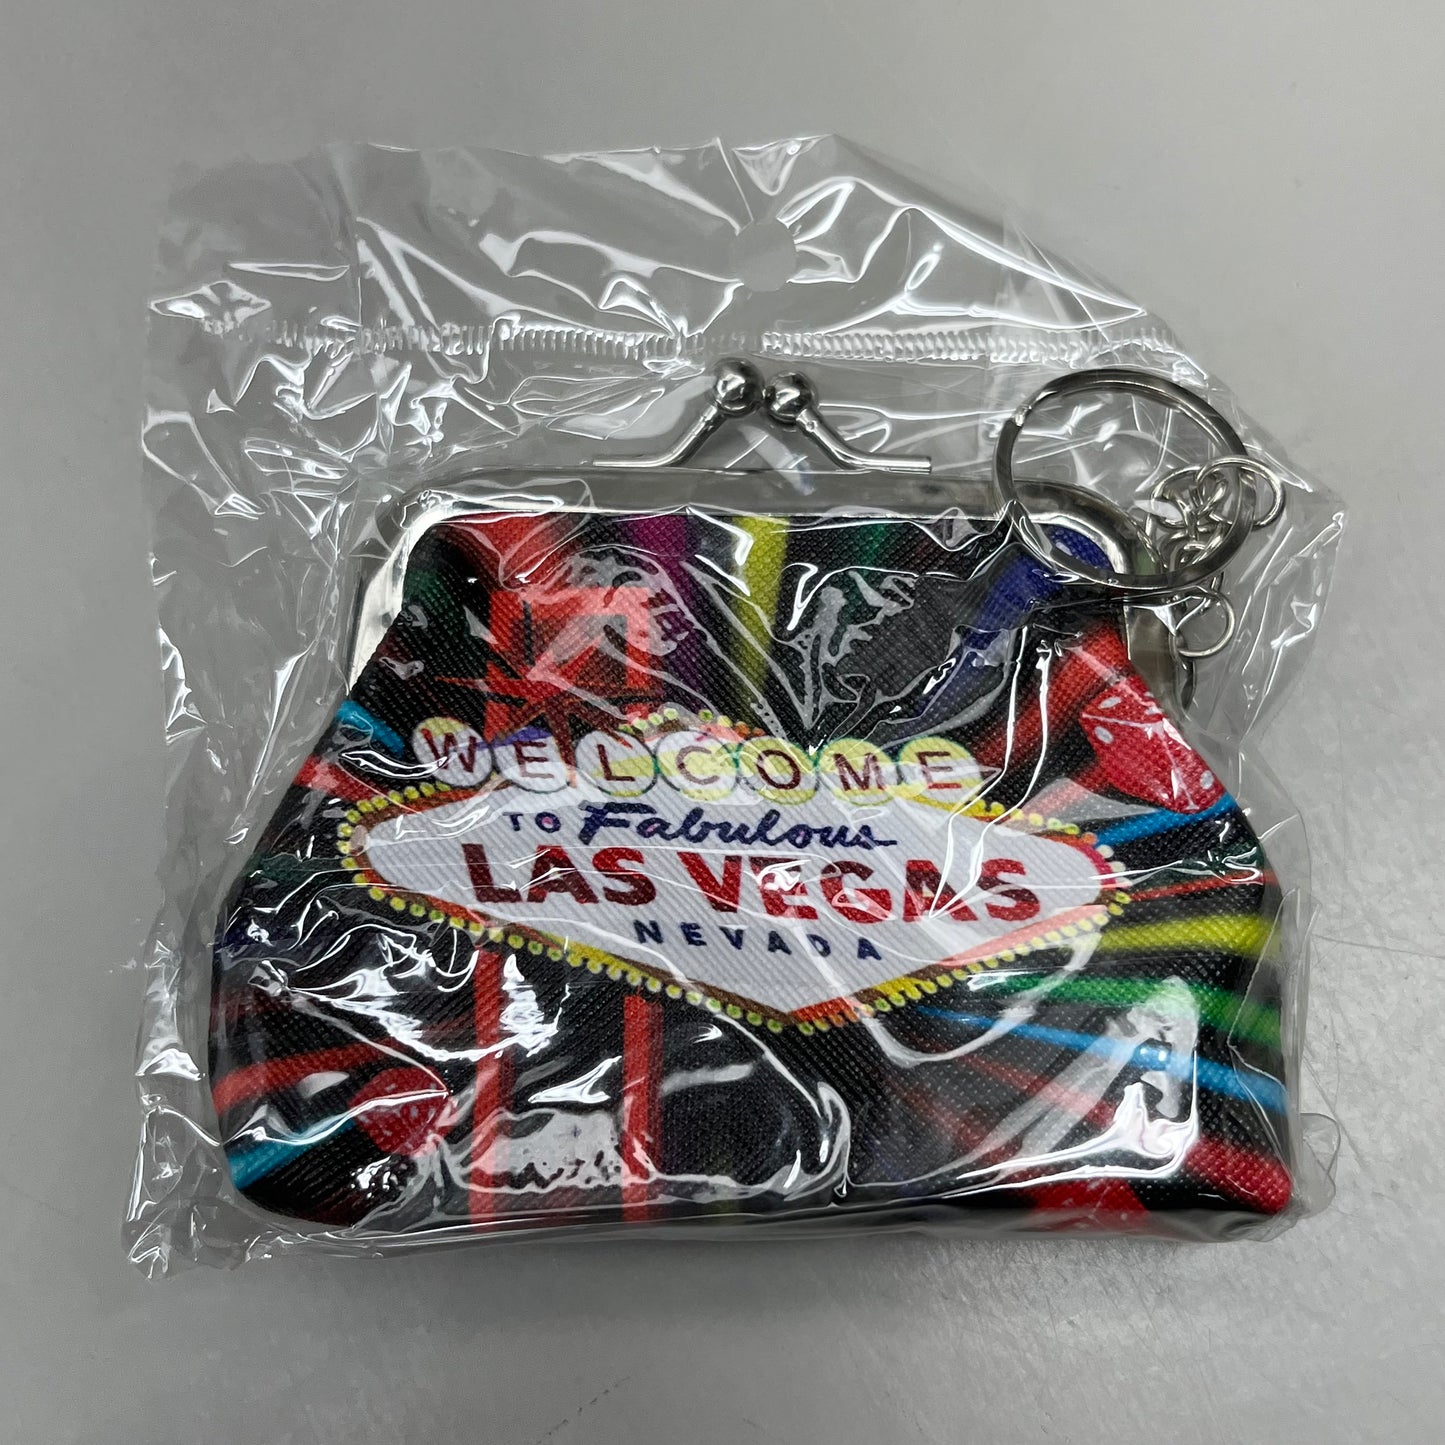 LAS VEGAS 3-PACK! Welcome to Fabulous Las Vegas Coin Purse Souvenirs 4" x 4" Black